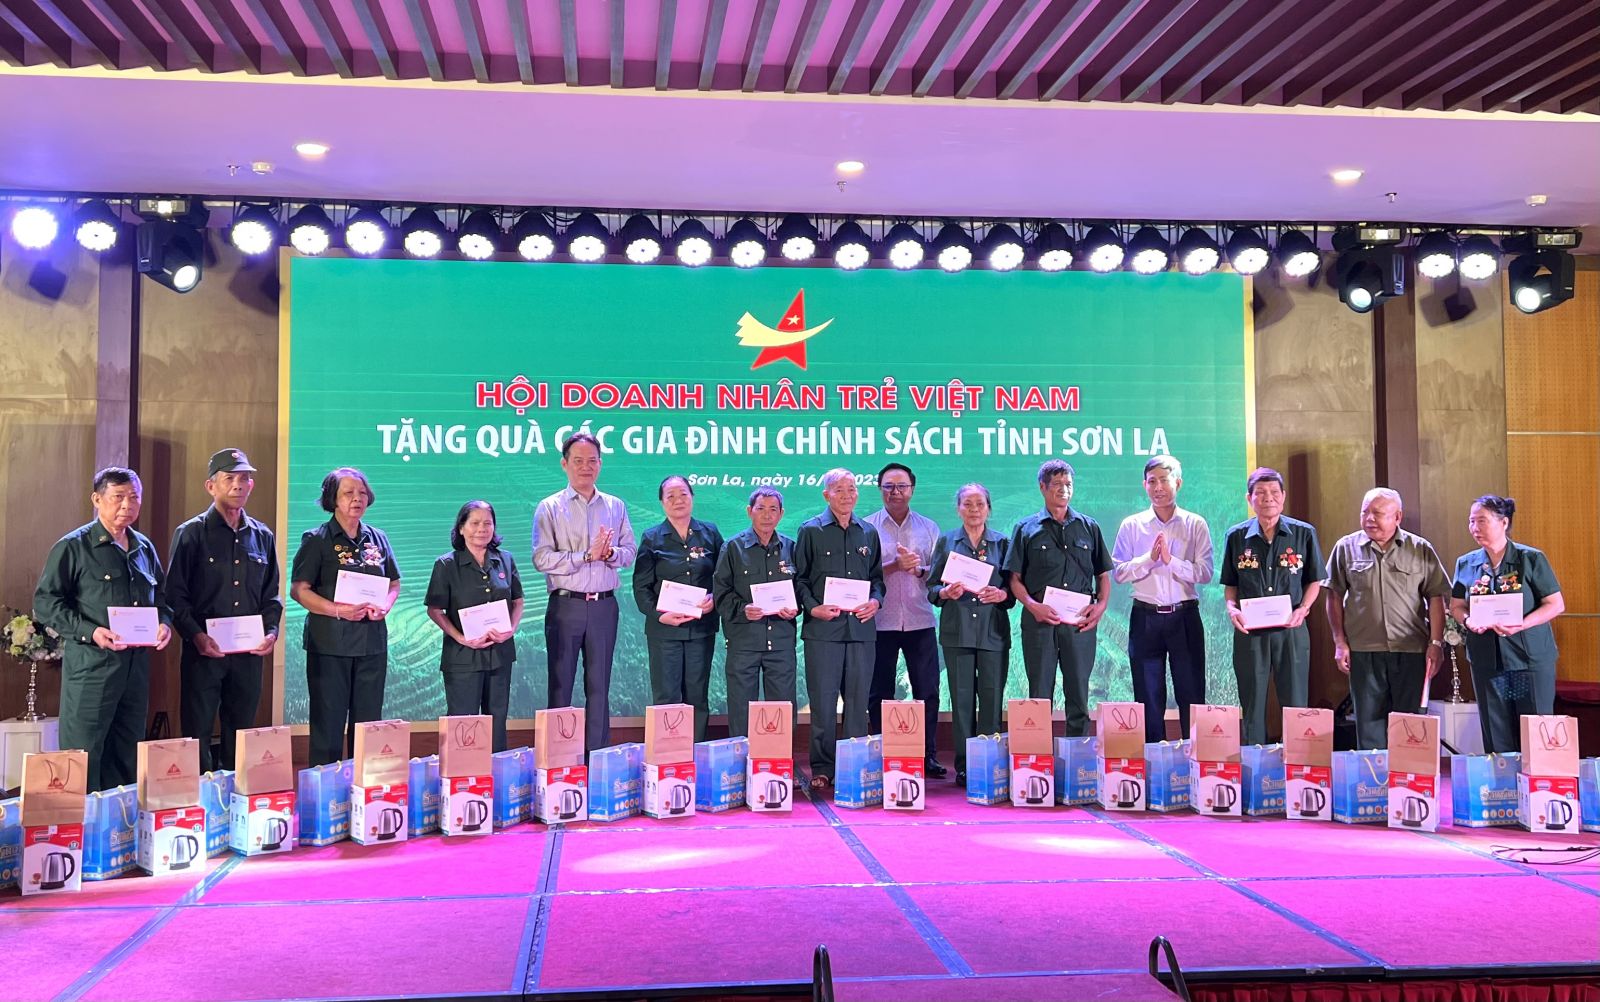 Hội Doanh nhân trẻ Việt Nam trao 50 suất quà cho các gia đình chính sách tỉnh Sơn La.